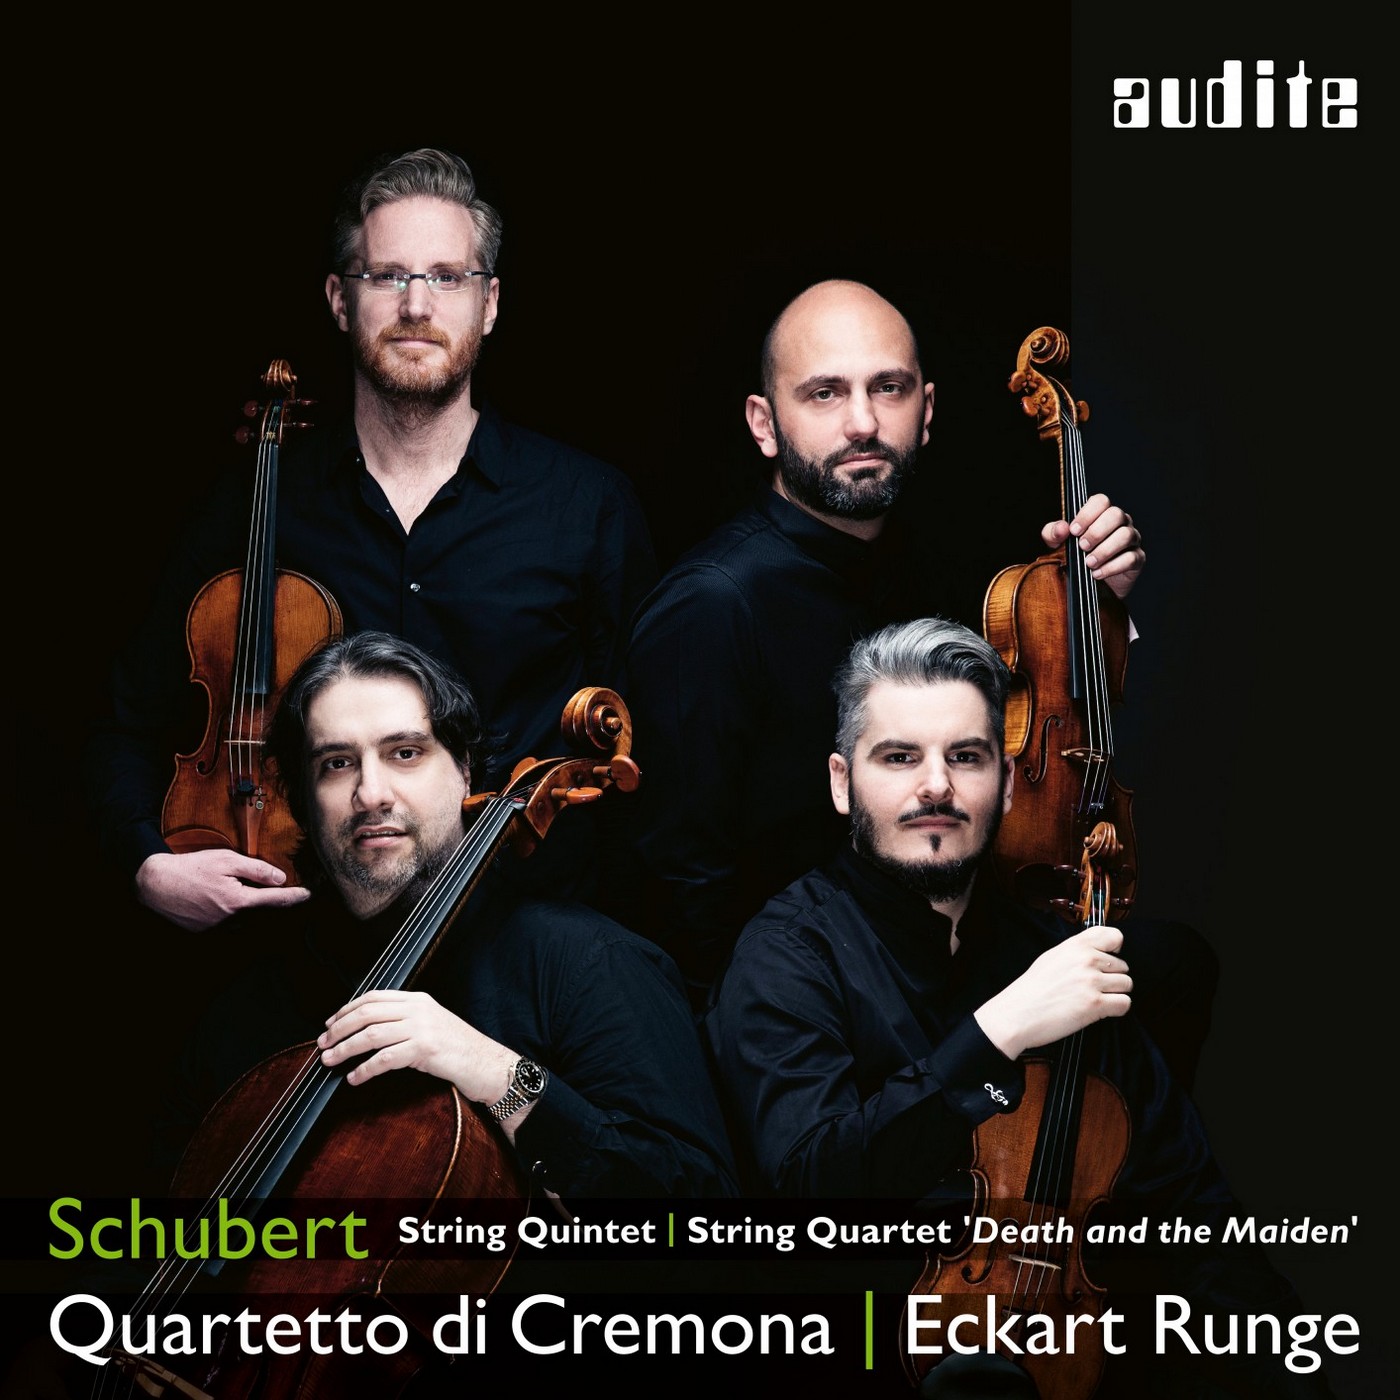 Quartetto di Cremona & Eckart Runge - Schubert: String Quintet & String Quartet ‘Death and the Maiden’ (2019) [FLAC 24bit/96kHz]